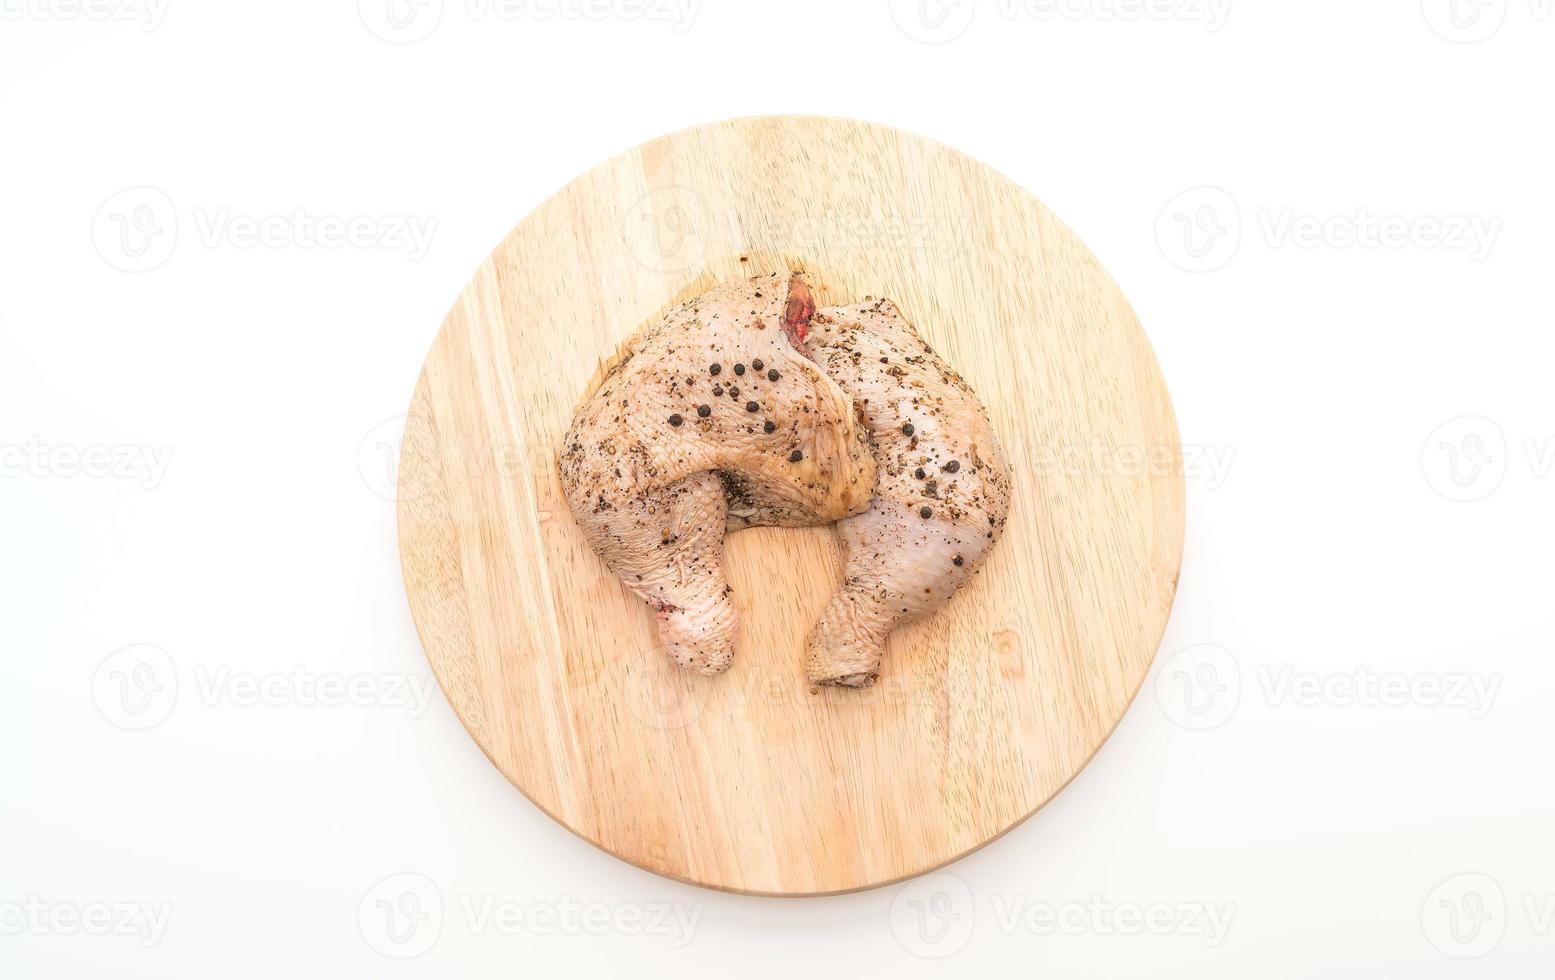 Coxa de frango marinado com molho, pimenta preta, alho e pimenta seca na tábua de madeira foto